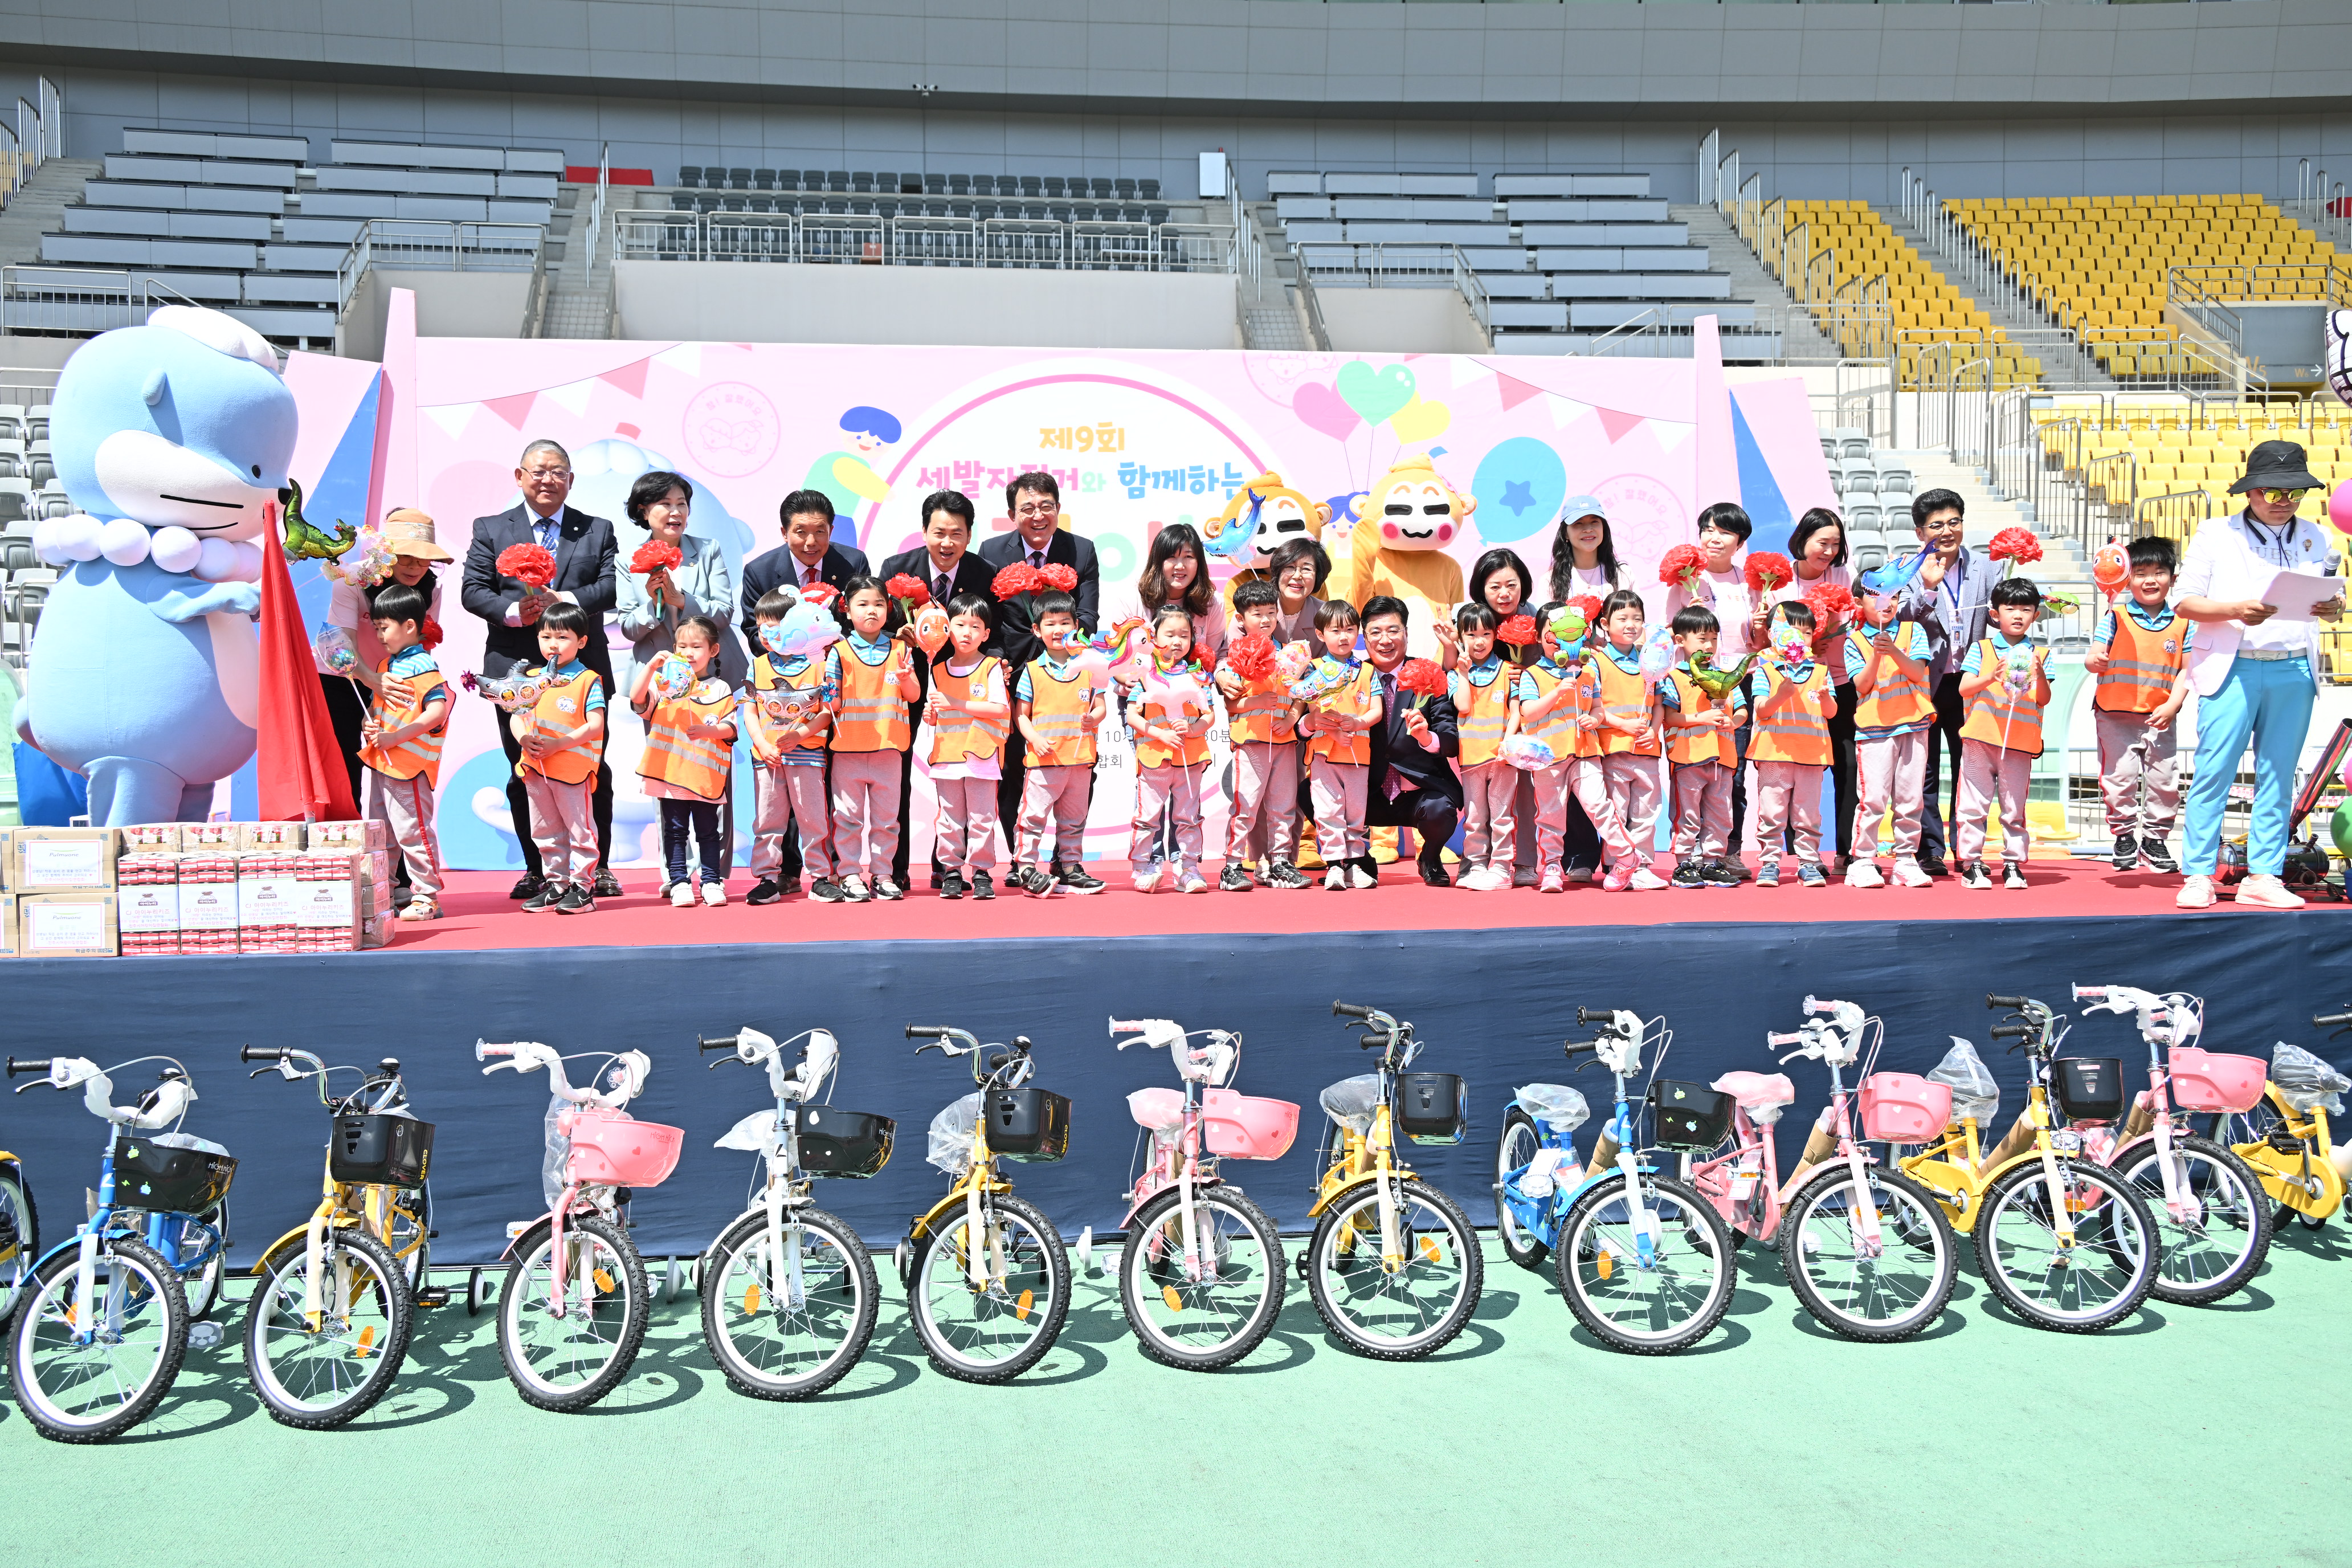 '제9회 어린이 세발자전거와 함께하는 어린이날 축제' 게시글의 사진(1) 'DSC_8338.JPG'